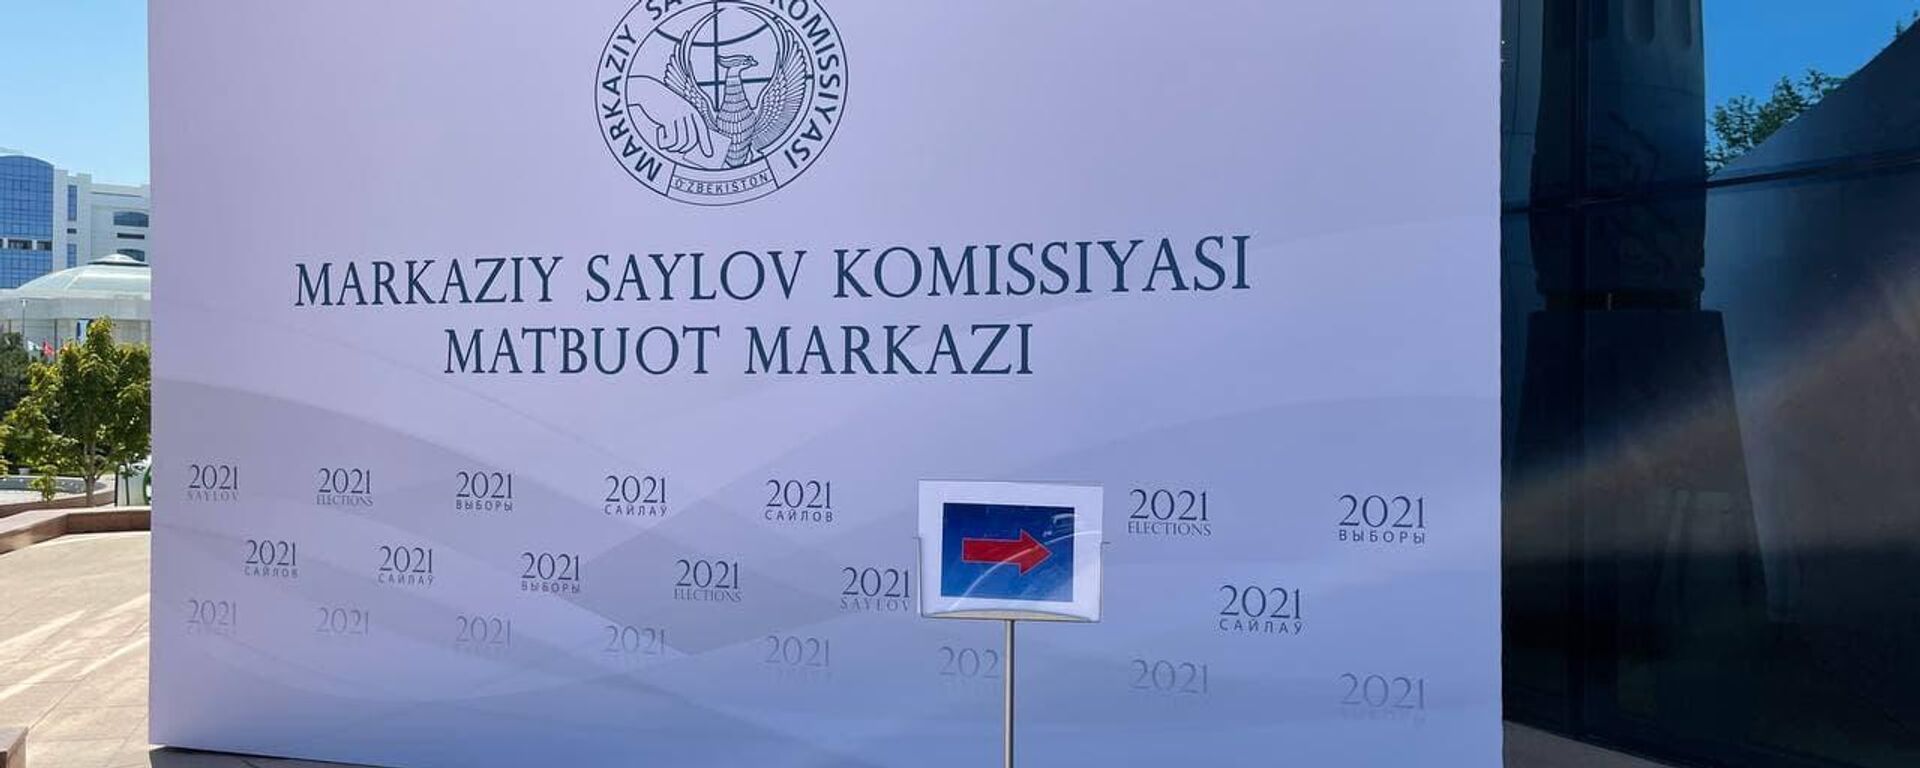 Предвыборная кампания президента Узбекистана началась - Sputnik Узбекистан, 1920, 23.07.2021